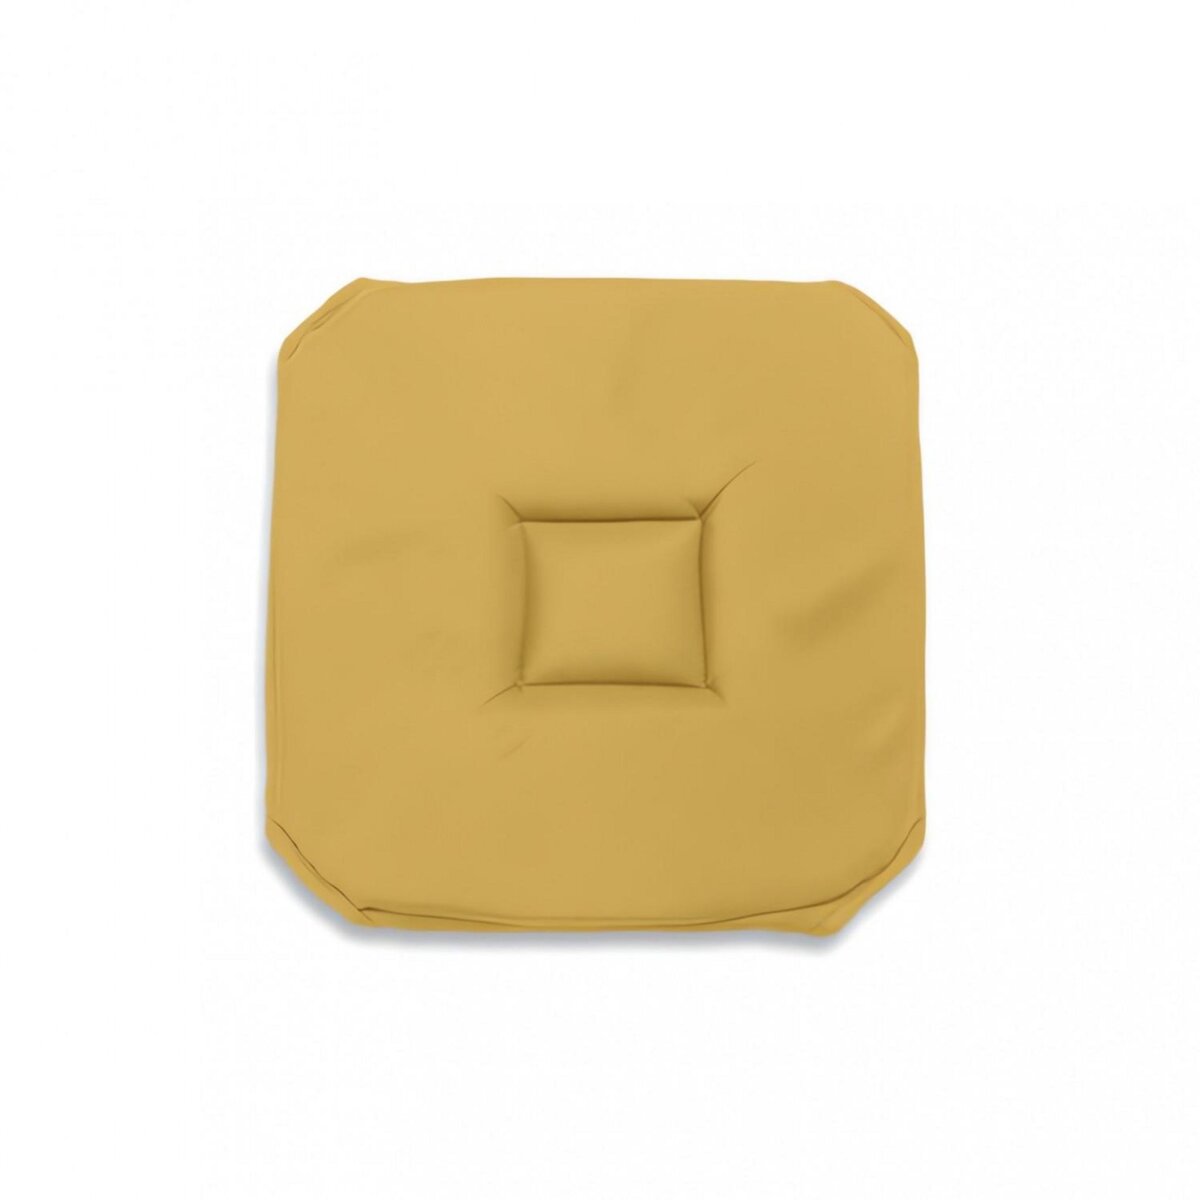  Dessus de chaise gobelin 40x40X3 cm ALIX jaune, par Soleil d'ocre